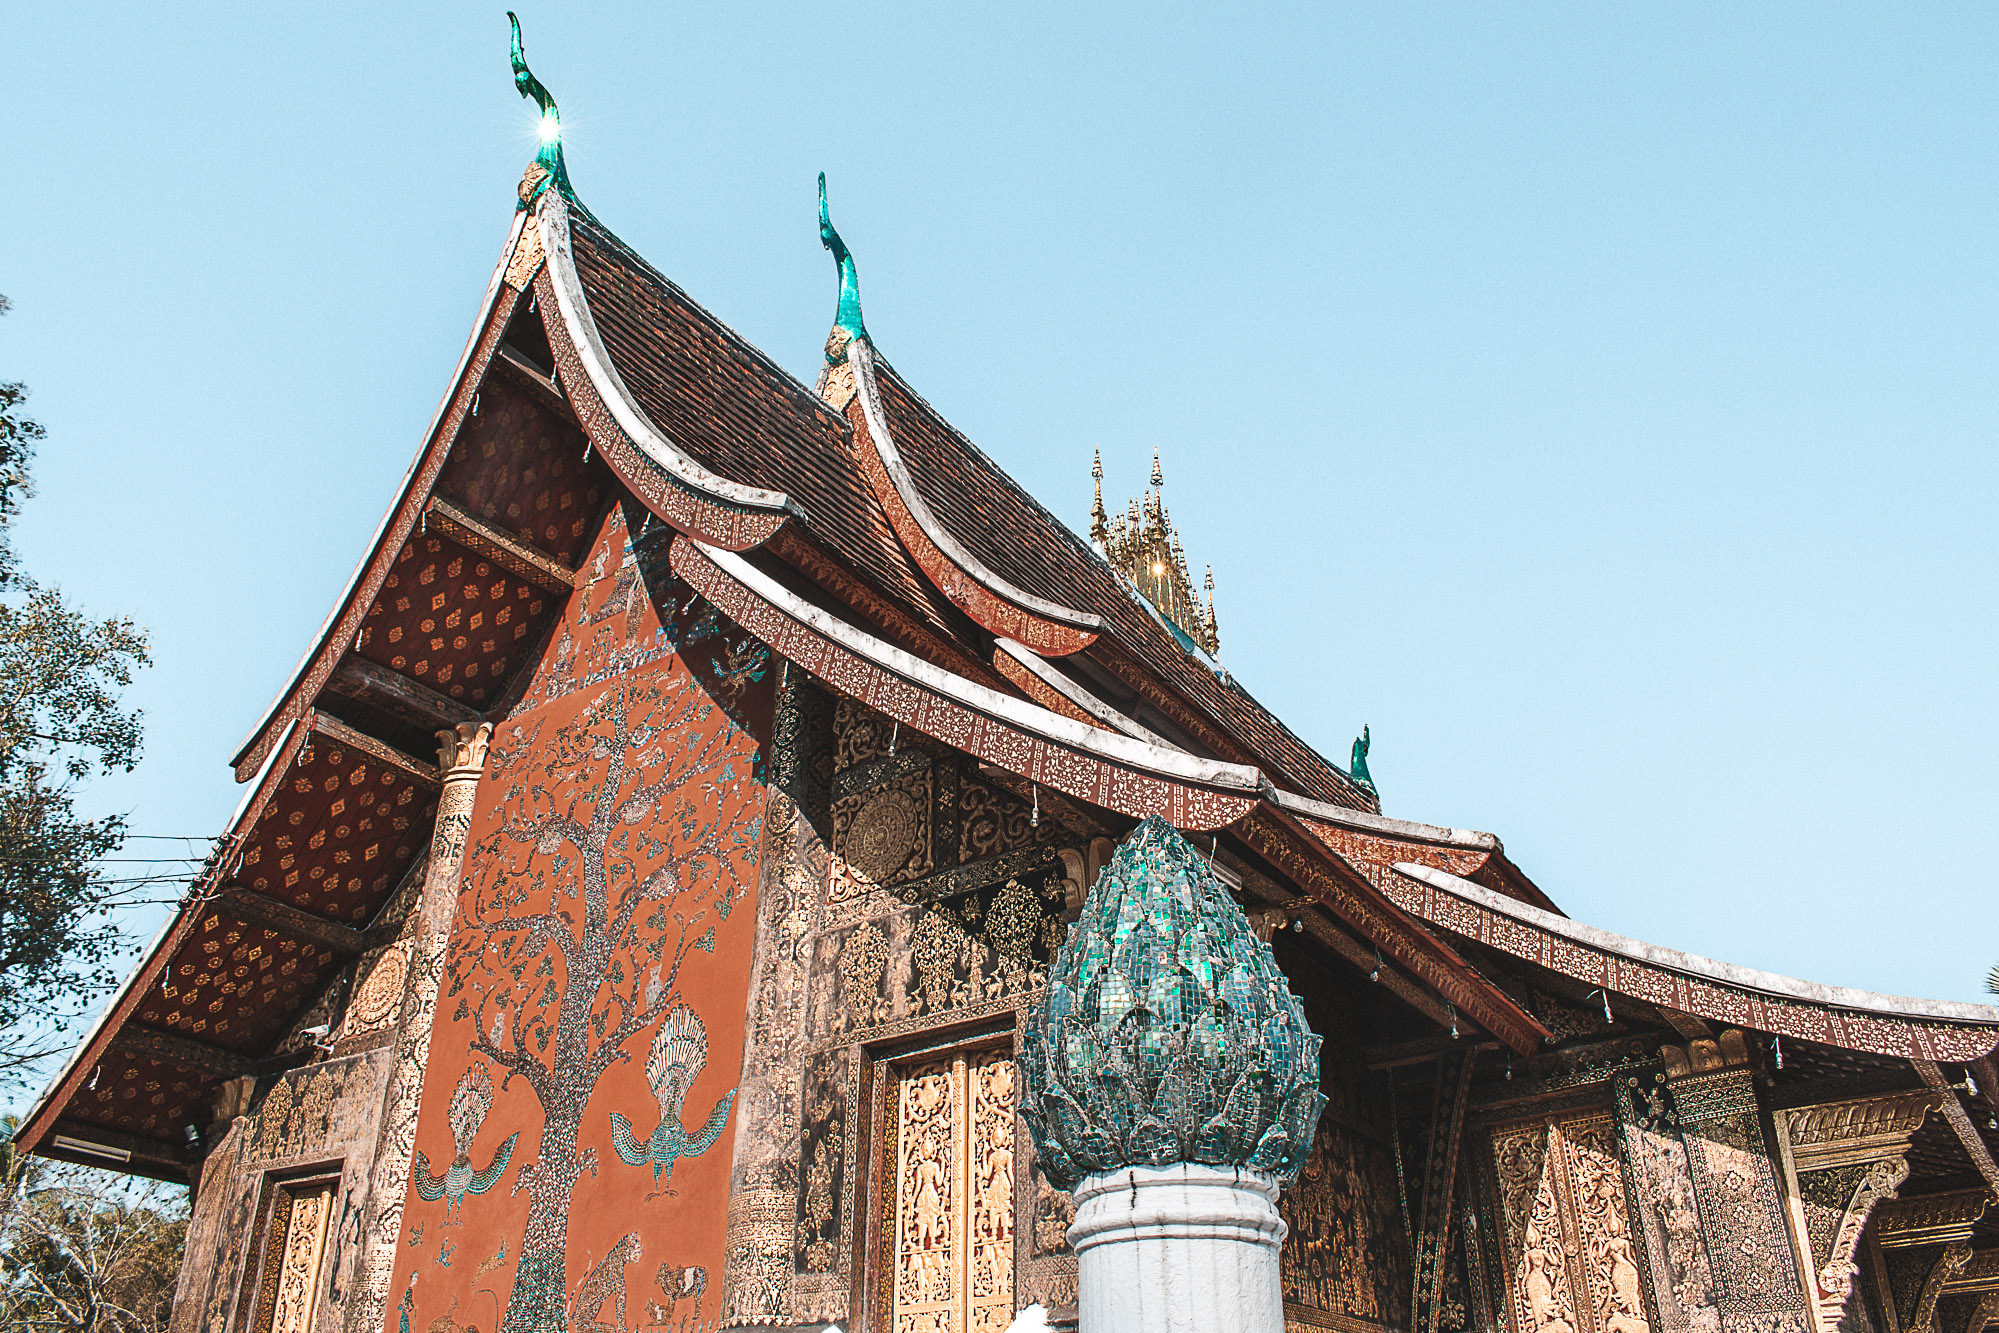 Roteiro de viagem em Luang Prabang no Laos